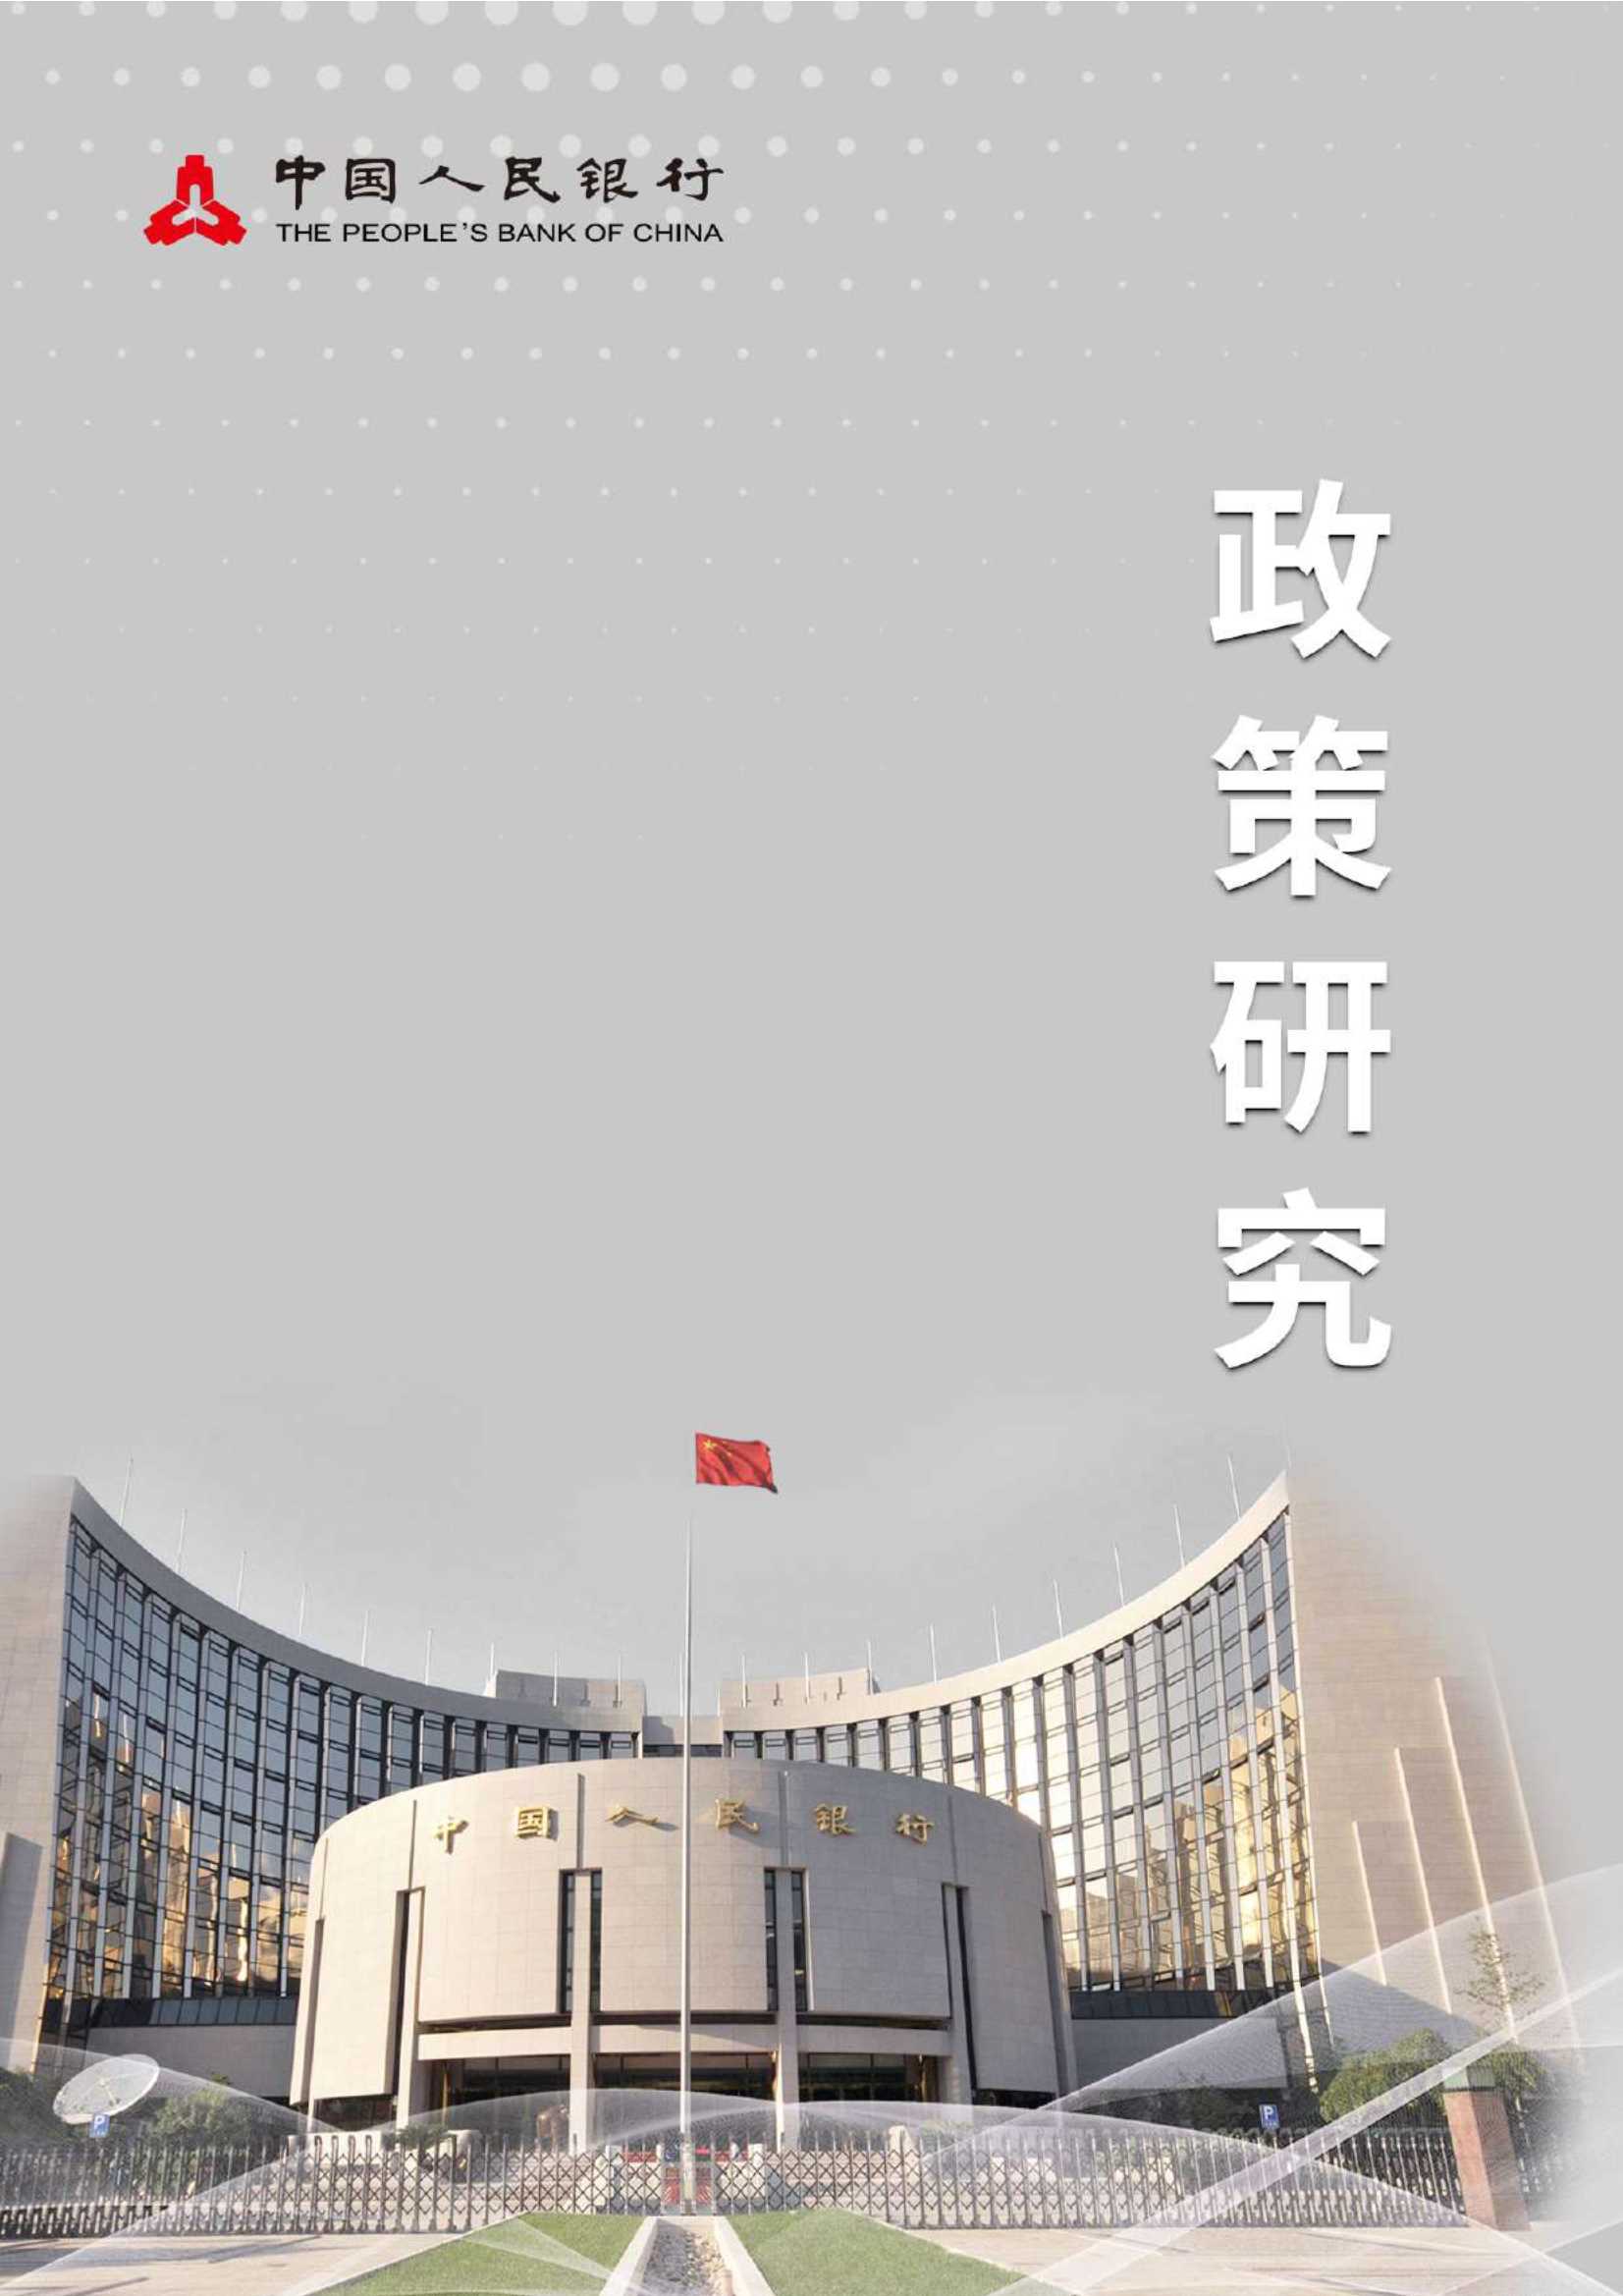 中国人民银行-国际养老基金可持续投资的实践、问题与建议-2021.04-13页